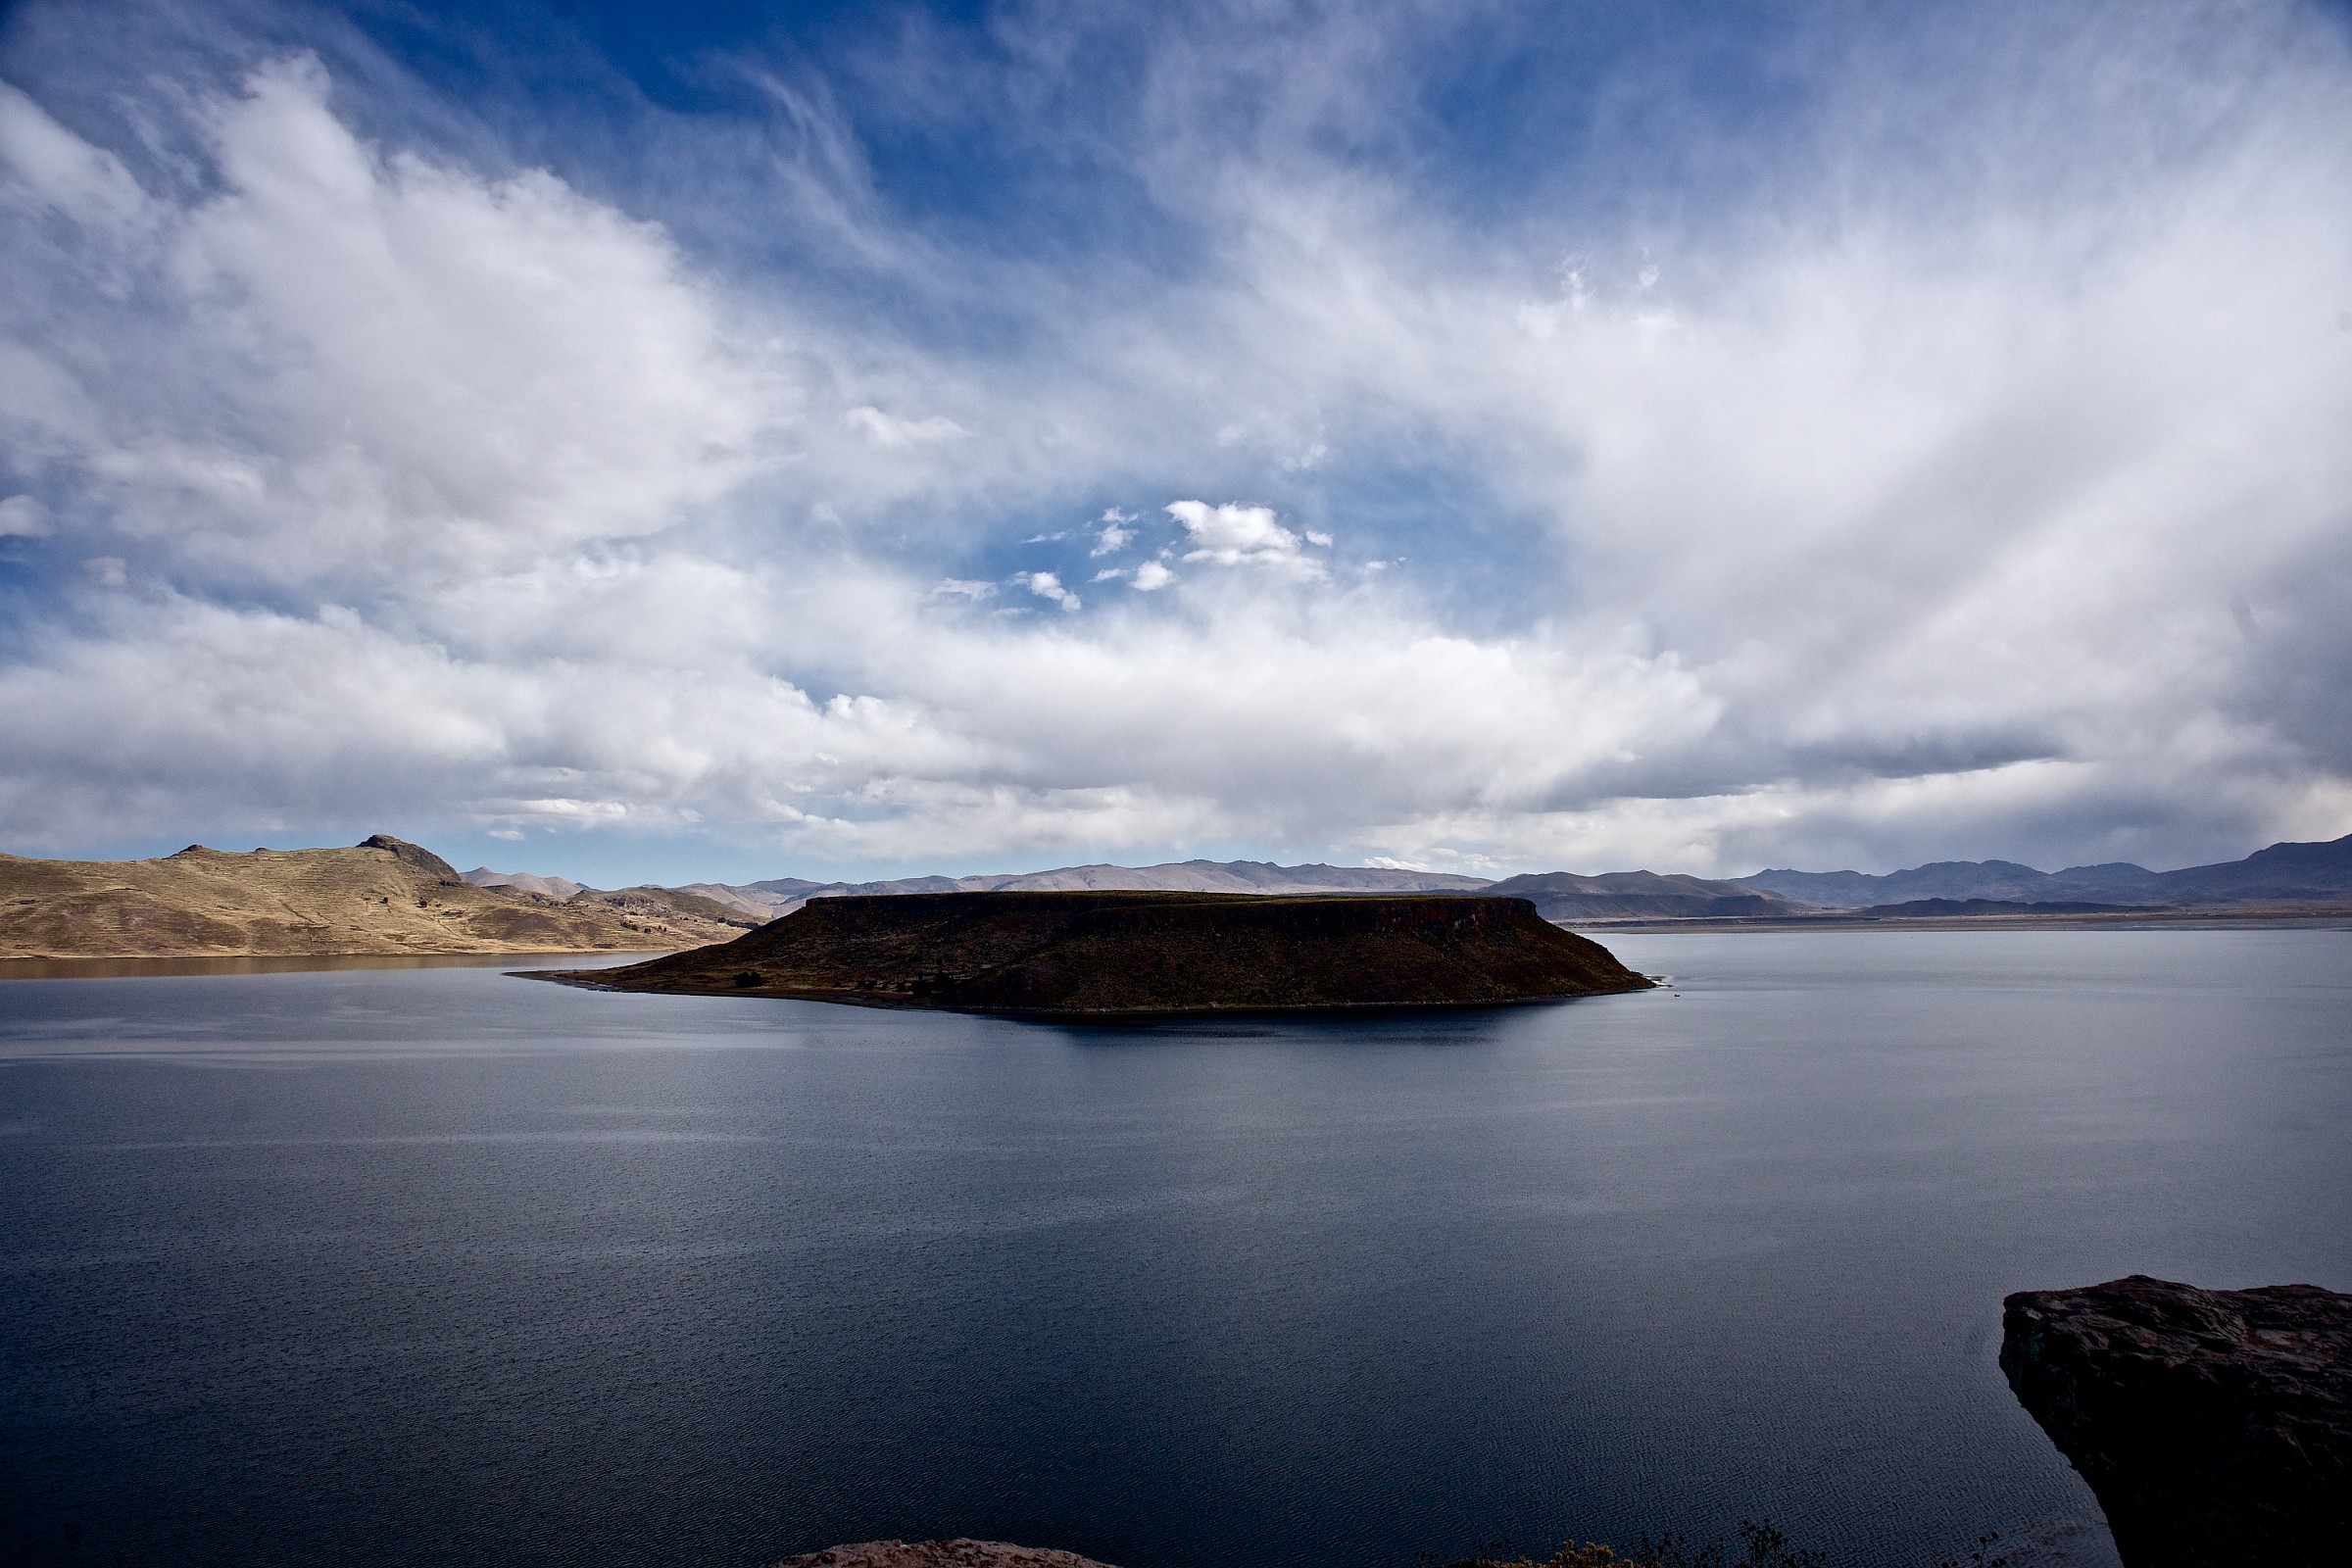 Sillustani Lake - 3800 m. Peru...